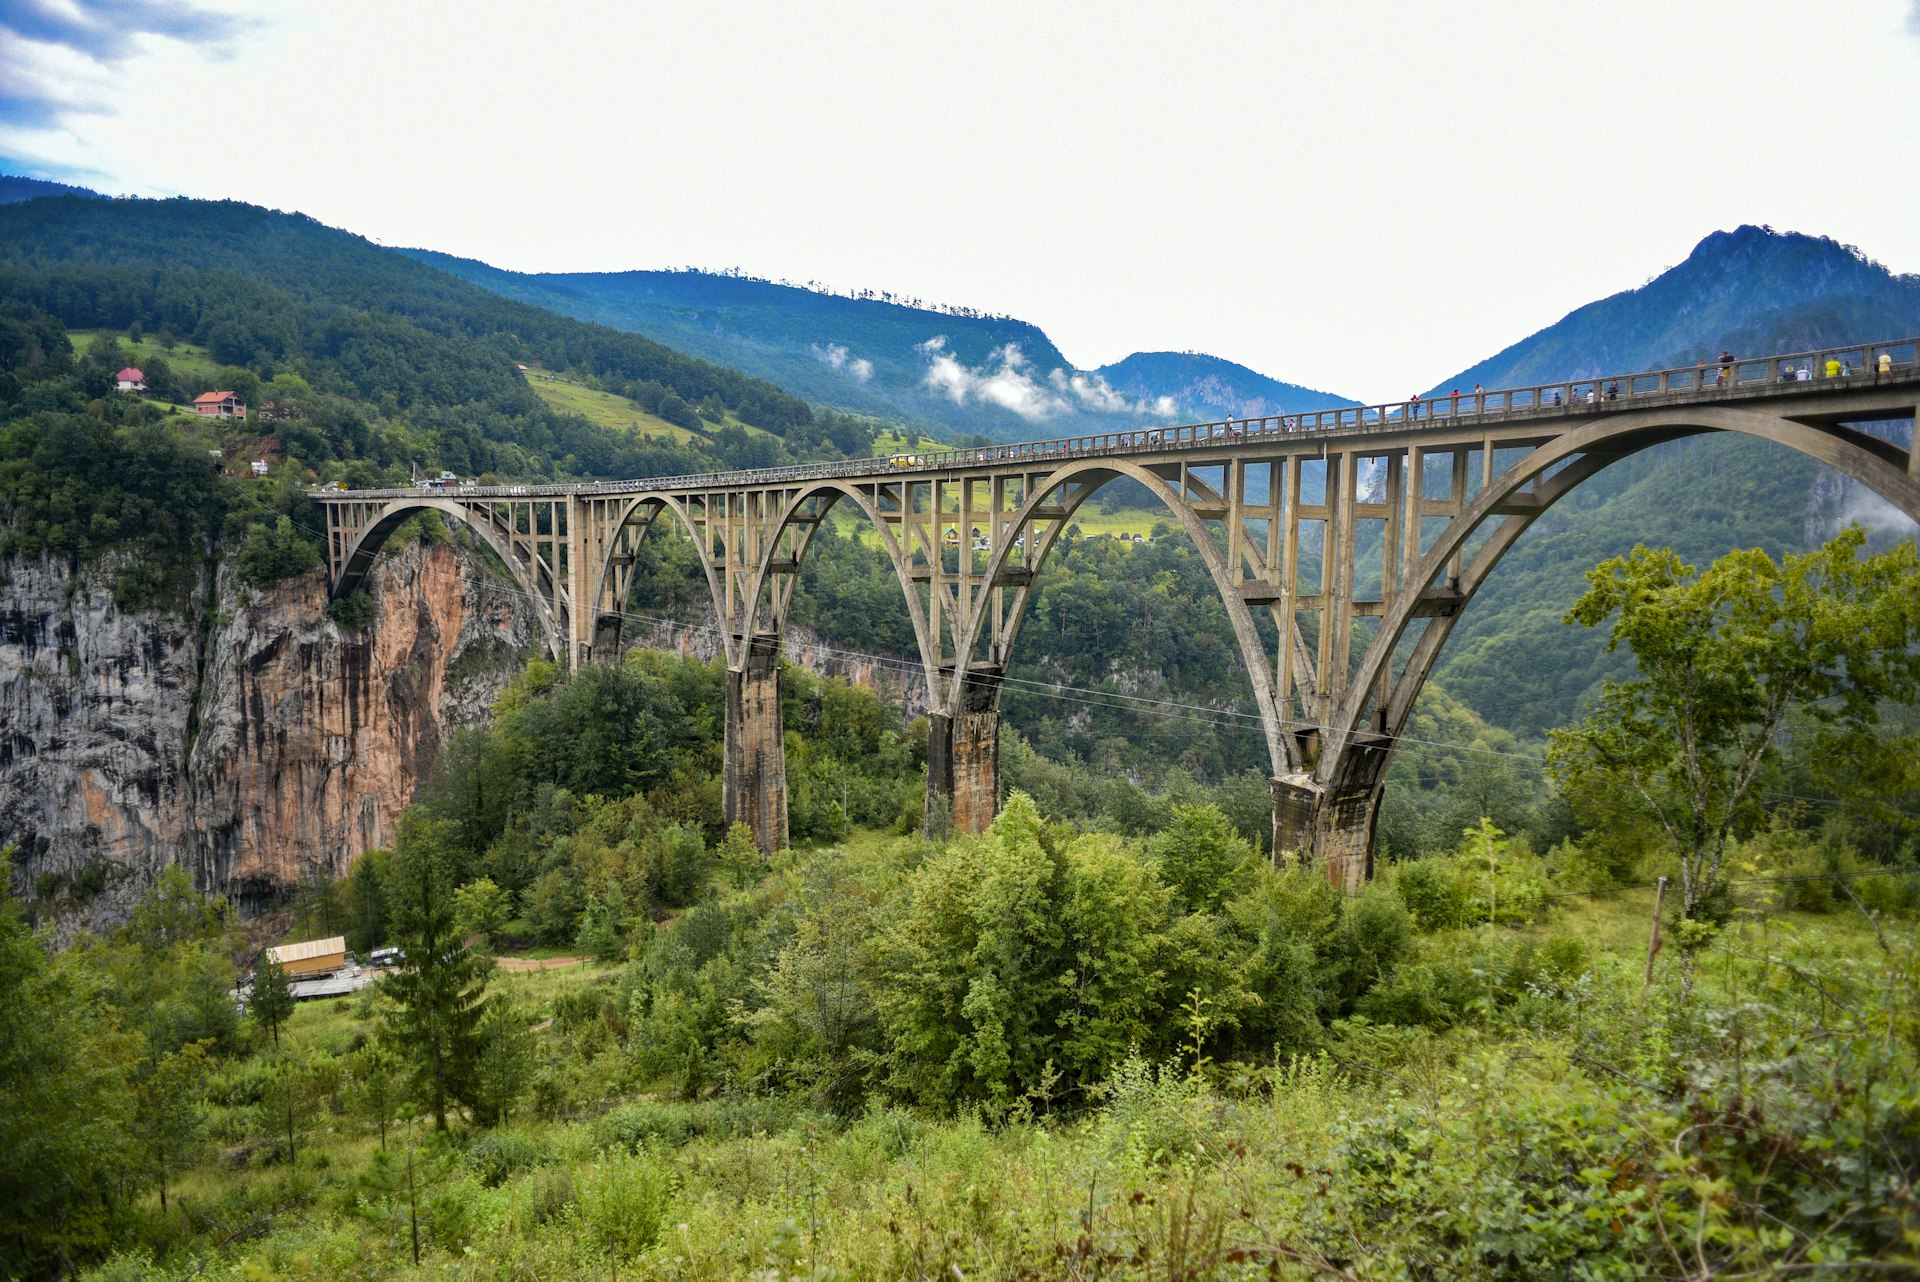 Pessoas caminham por uma ponte com vários arcos que atravessa um desfiladeiro em uma área montanhosa